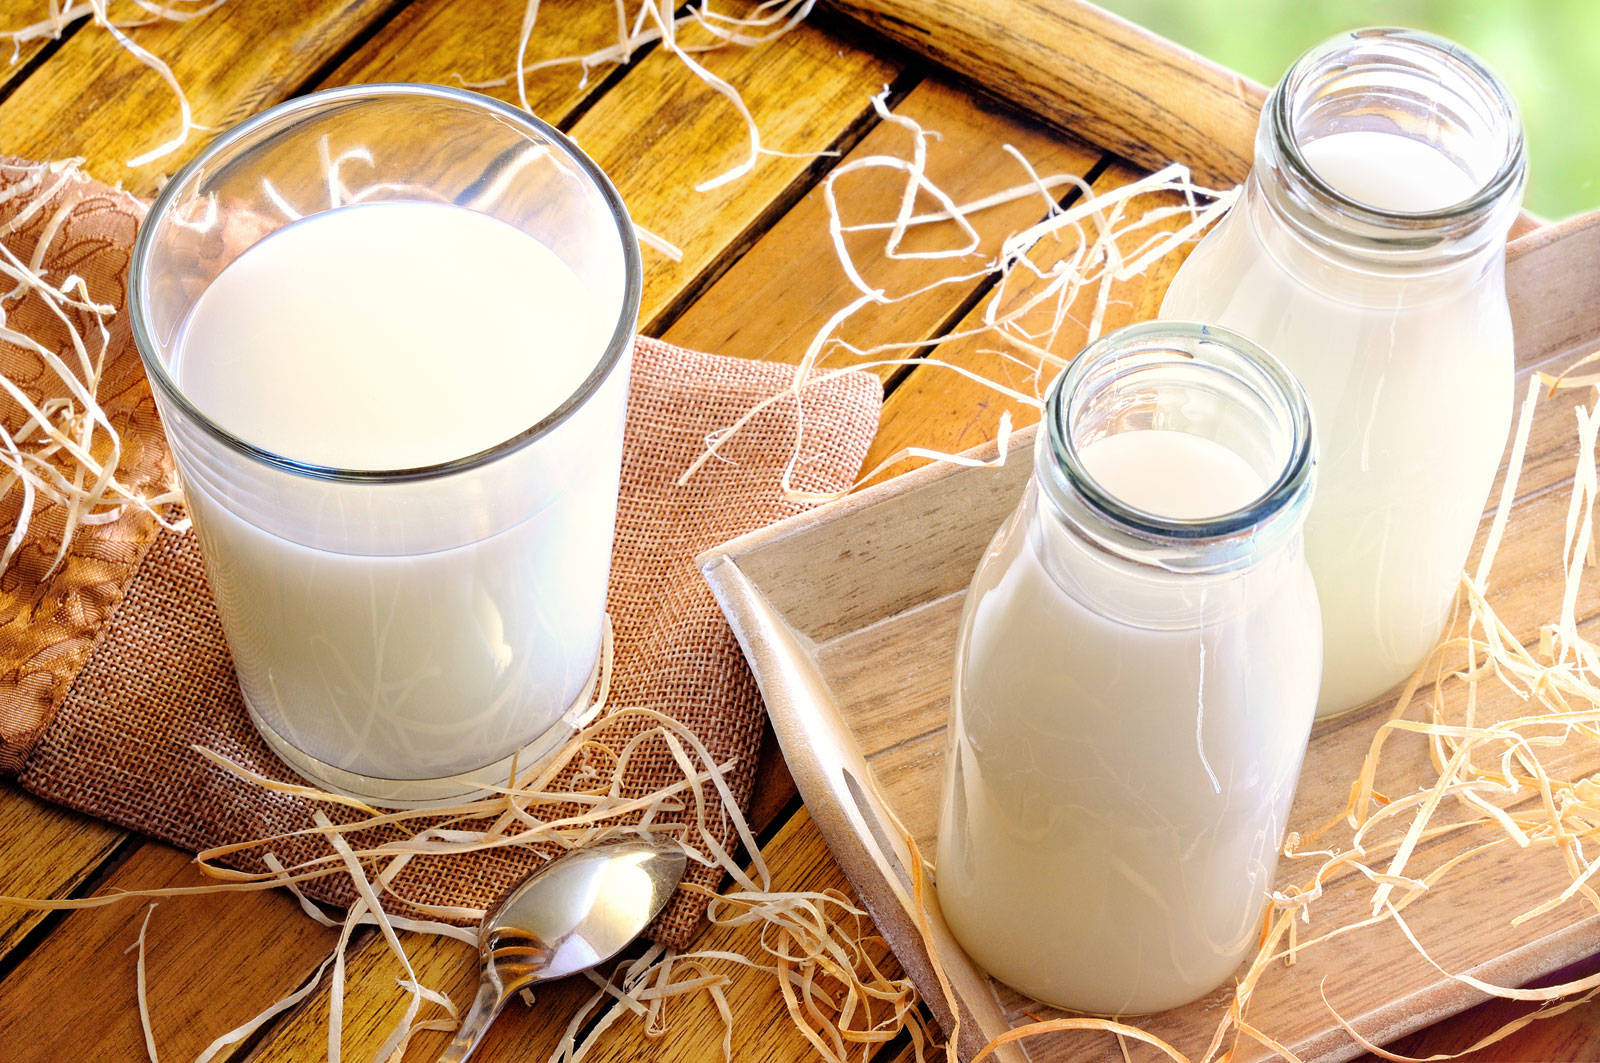 Правила реализации молочной продукции могут измениться 1 сентября